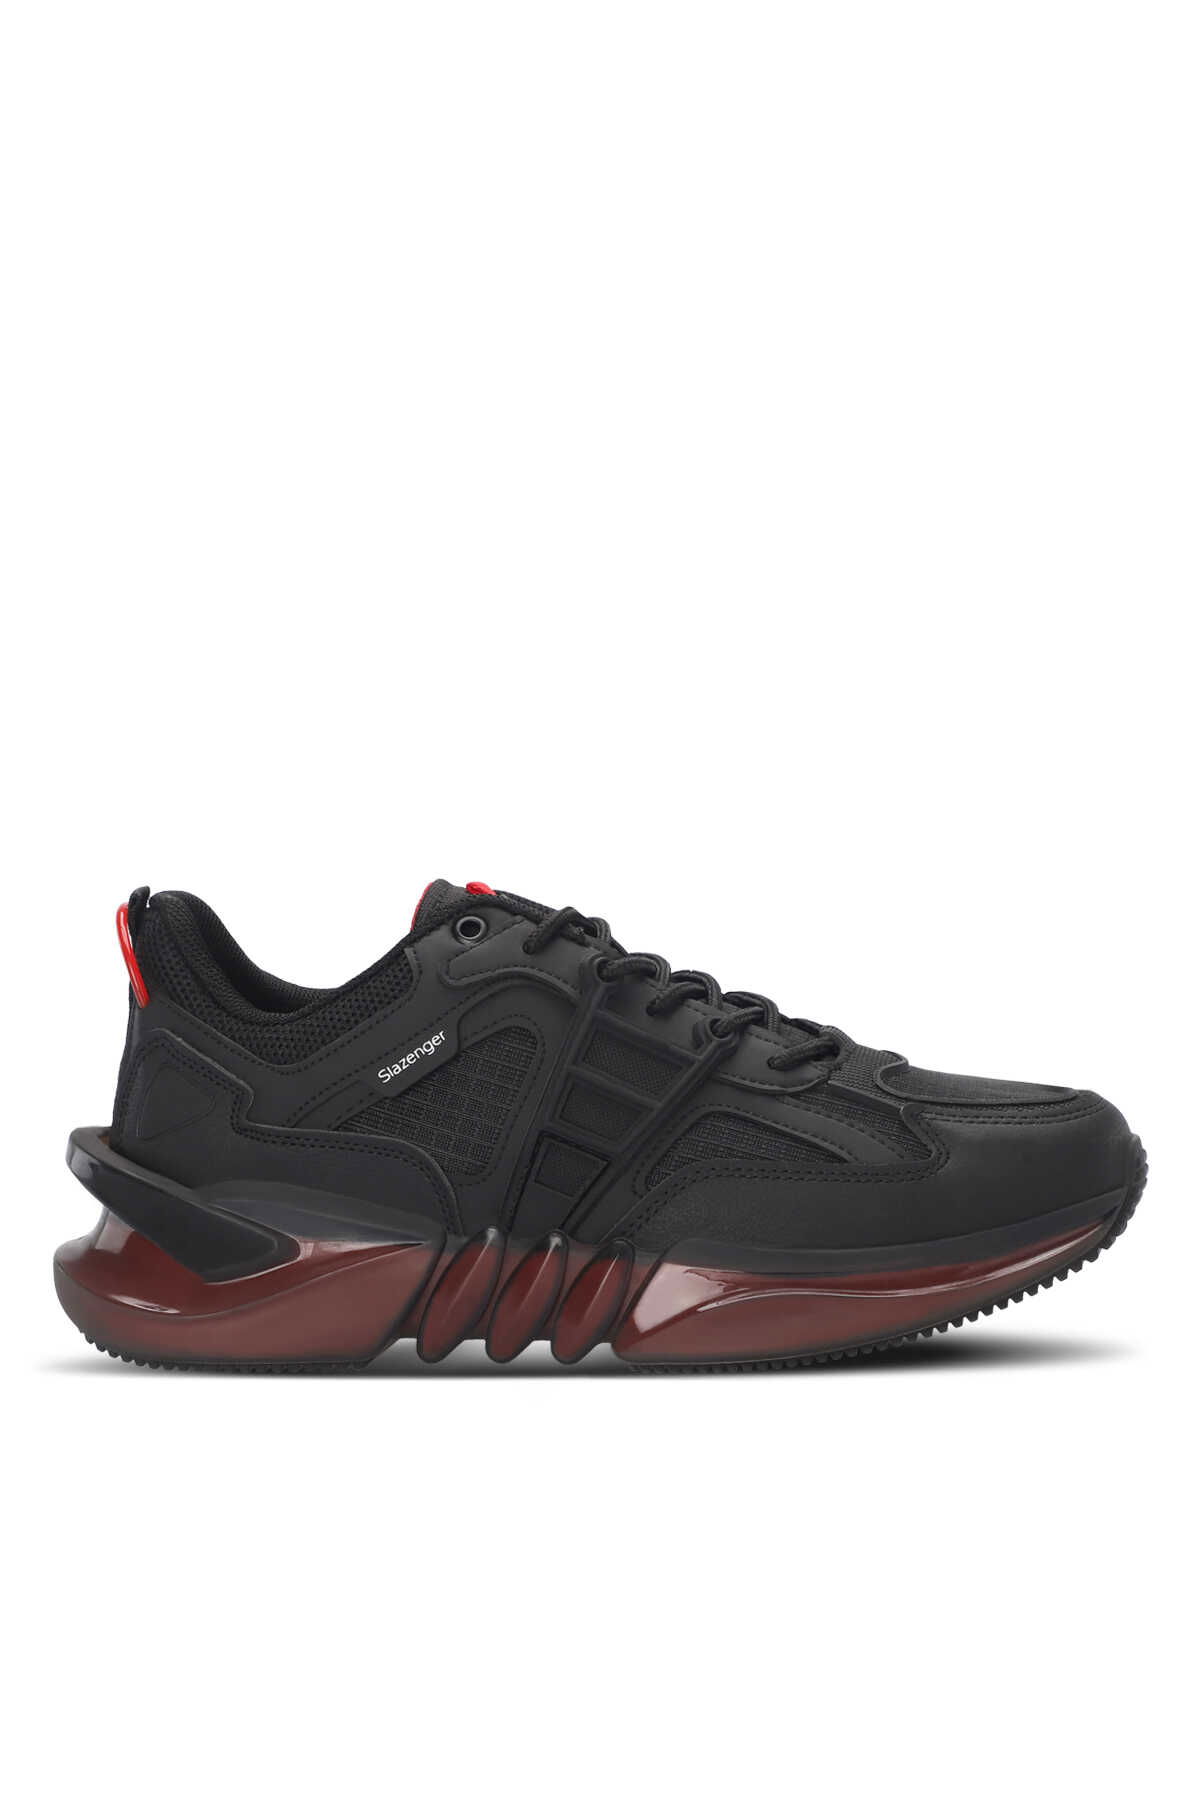 Slazenger - Slazenger ZENITH Erkek Sneaker Ayakkabı Siyah / Kırmızı